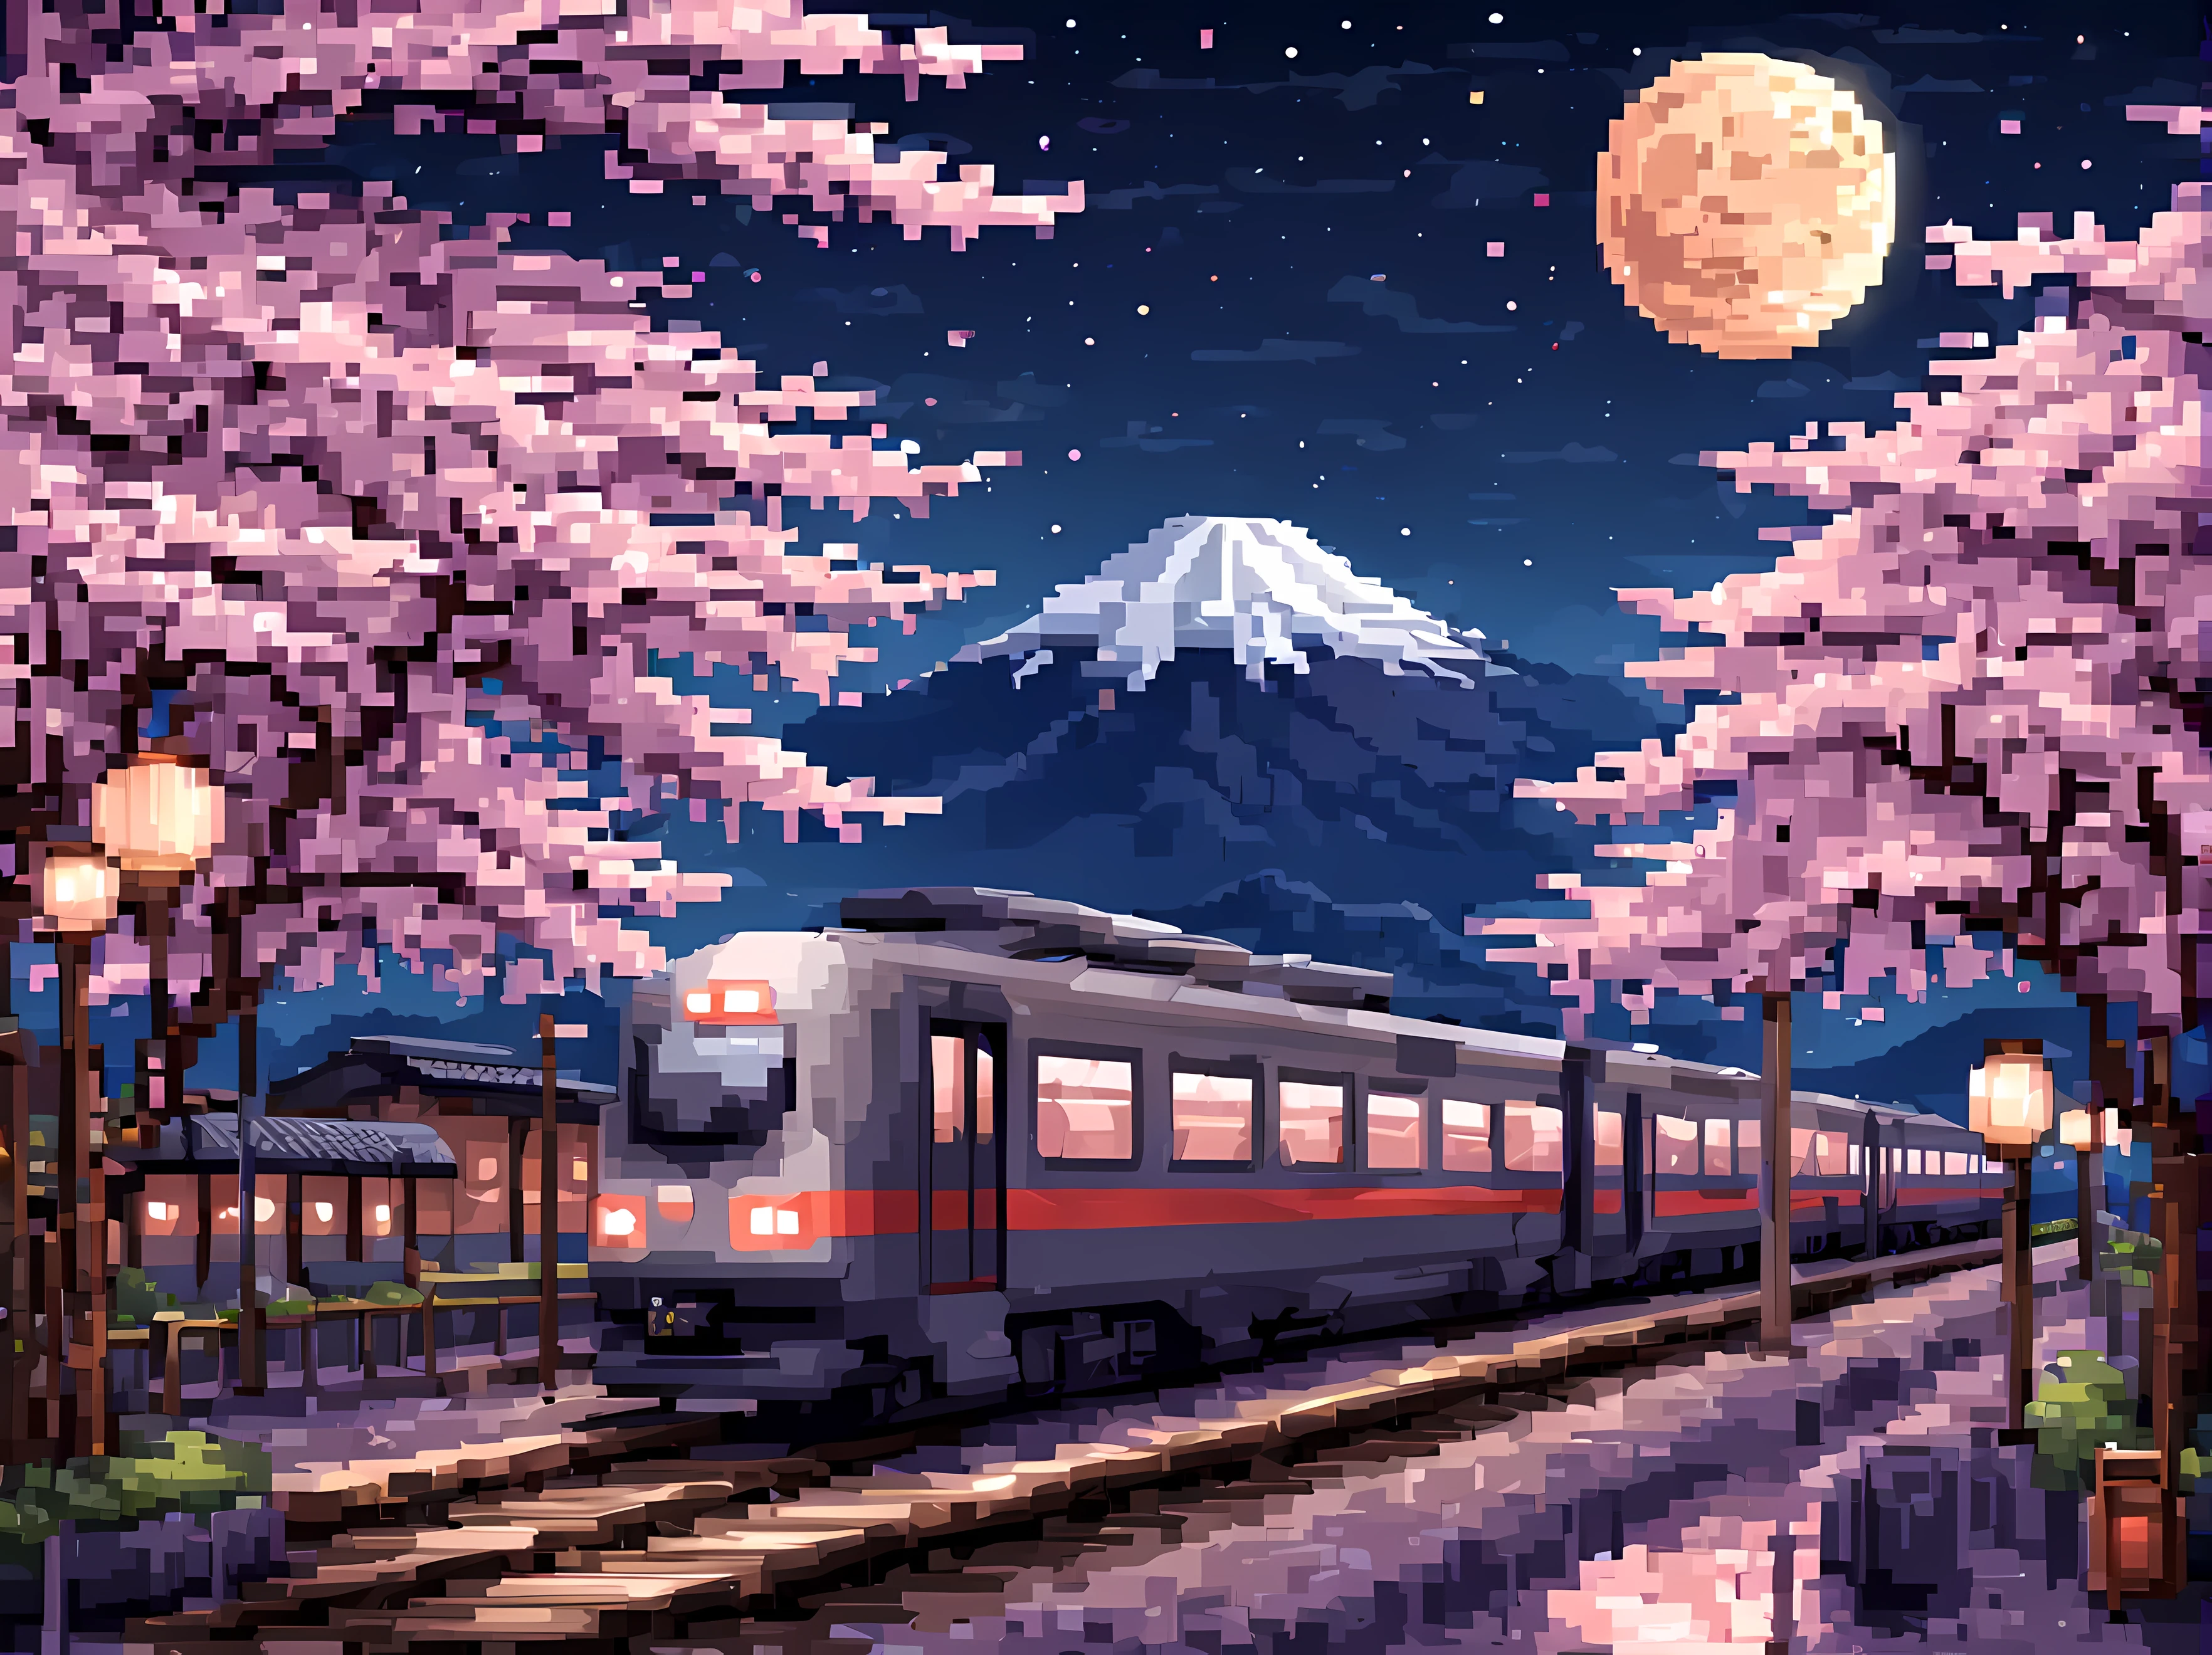 ドット絵, 満月の星が輝く春の夜の日本の駅の魅惑的な風景, プラットフォームに停まっている洗練された未来的な電車, 桜の木に囲まれて, 提灯や木製のベンチなどの伝統的な要素, 背景には富士山, 最大16K解像度の傑作, 素晴らしい品質. | ((もっと_詳細))